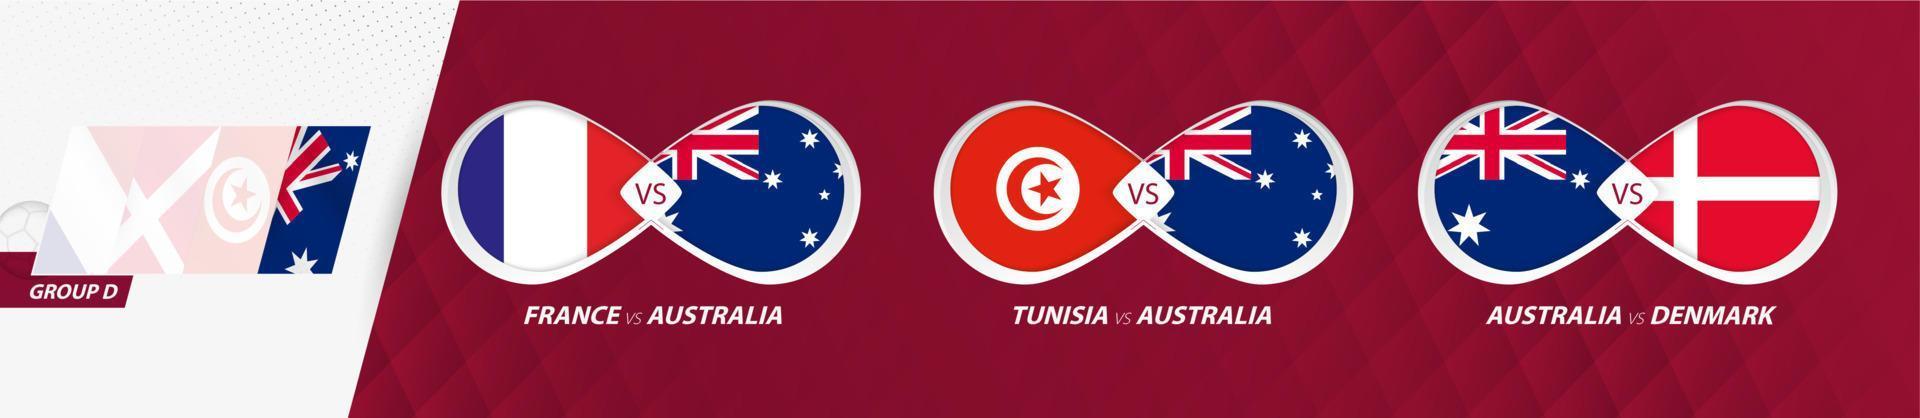 partidos de la selección nacional de australia en el grupo d, competición de fútbol 2022, icono de todos los juegos en la fase de grupos. vector